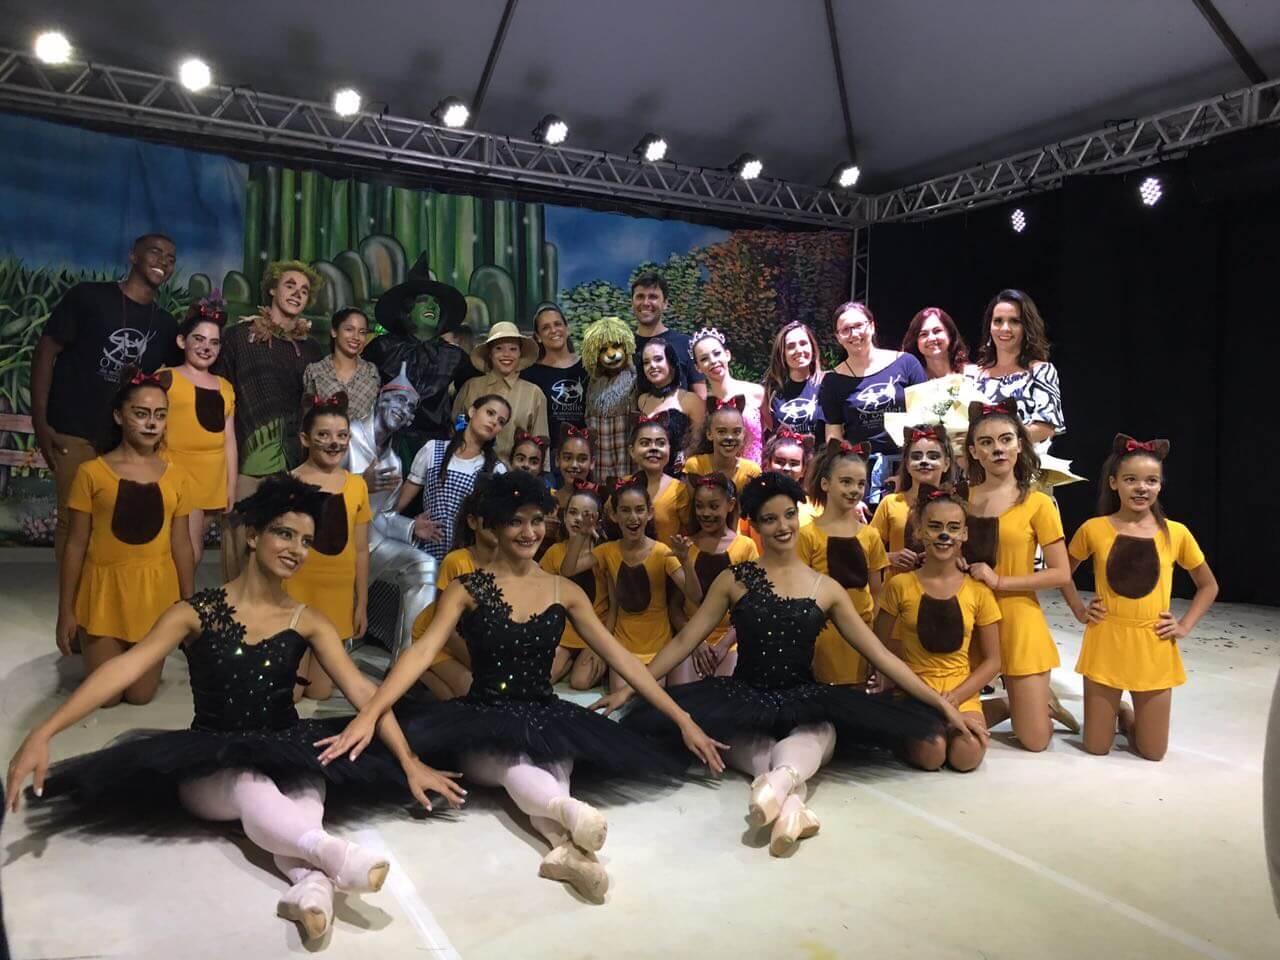 Espetáculo Mágico de Oz apresentado no Castelinho